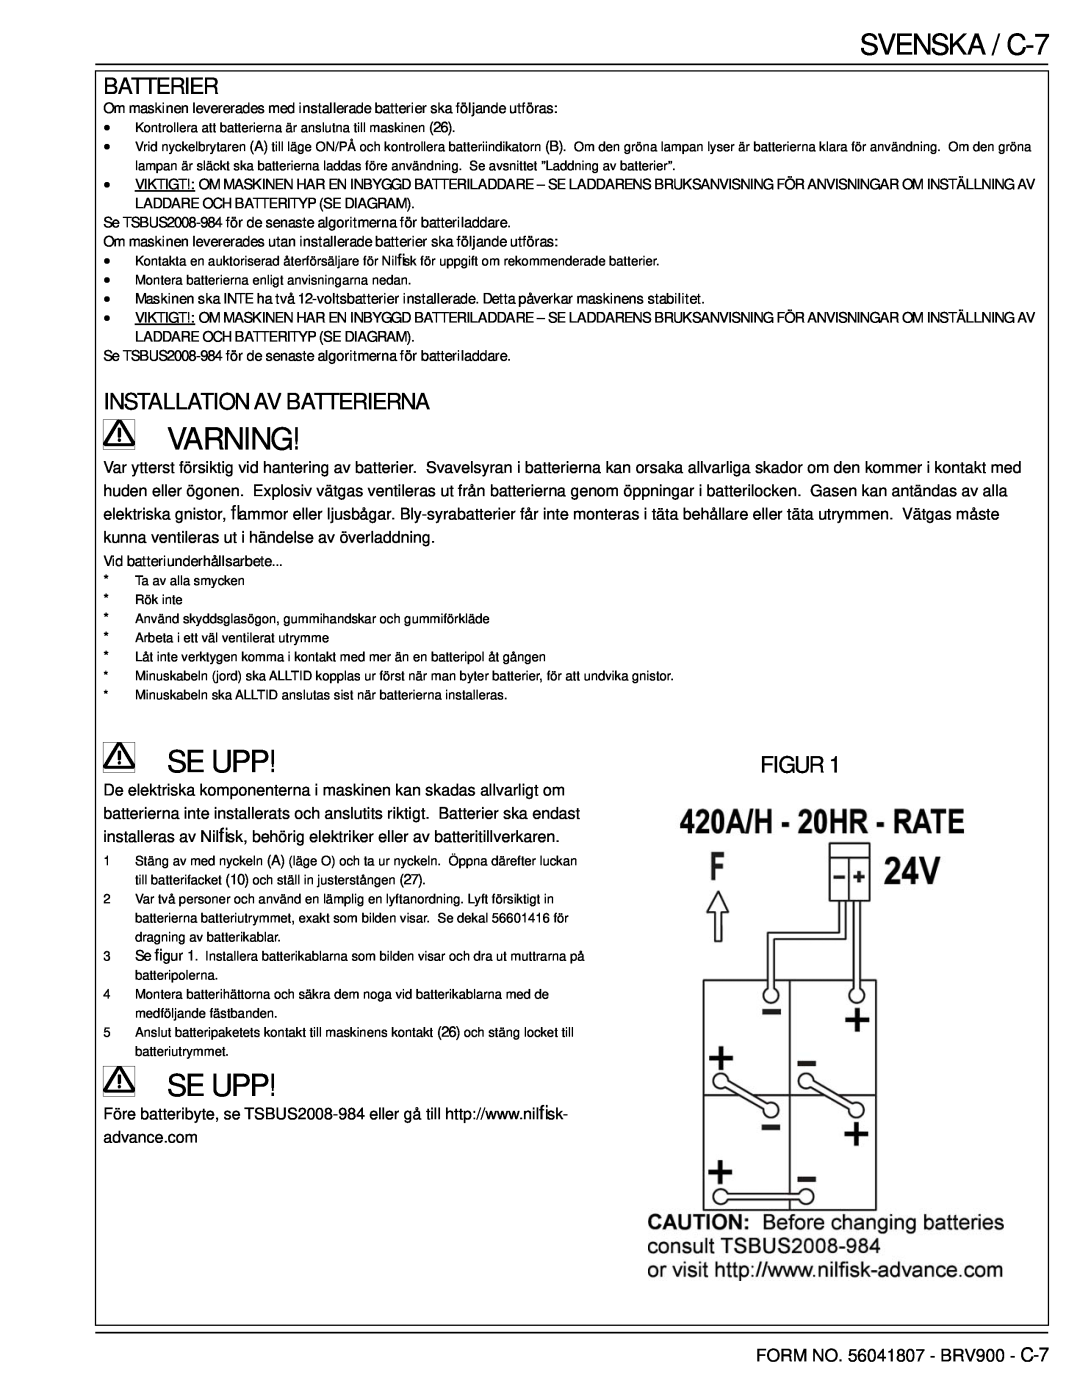 Nilfisk-Advance America 56602002 manual SVENSKA / C-7, Installation Av Batterierna, Varning, Se Upp, Figur 